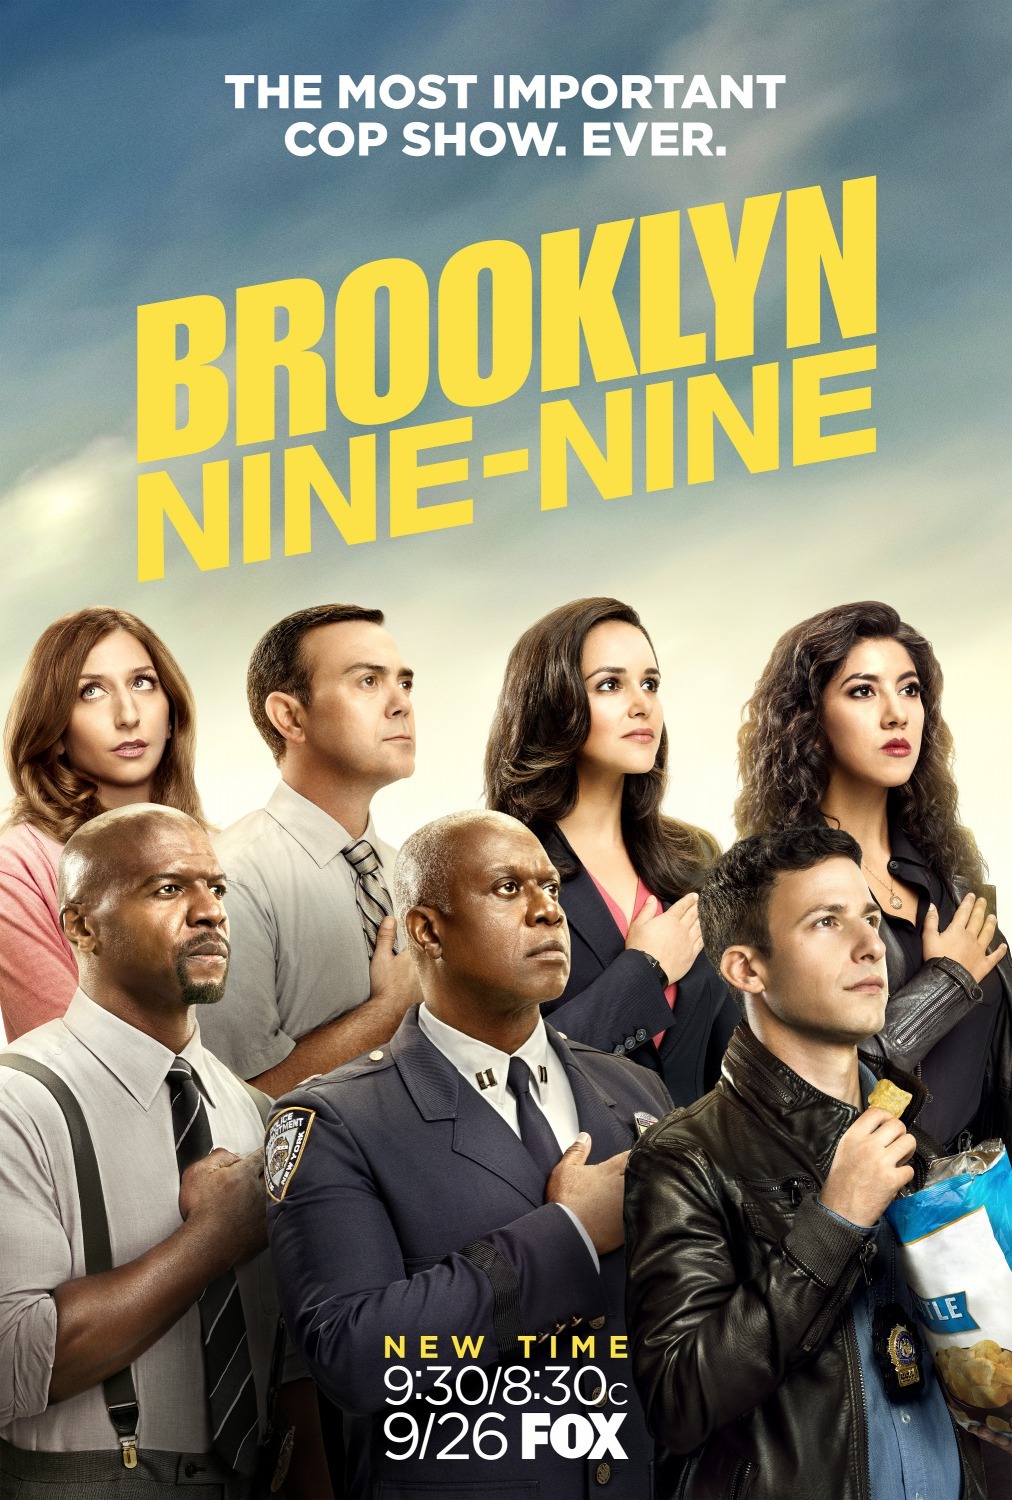 ดูหนังออนไลน์ฟรี Brooklyn Nine-Nine Season 4 EP.3 บรู๊คลินเก้า ปี 4 ตอนที่ 3